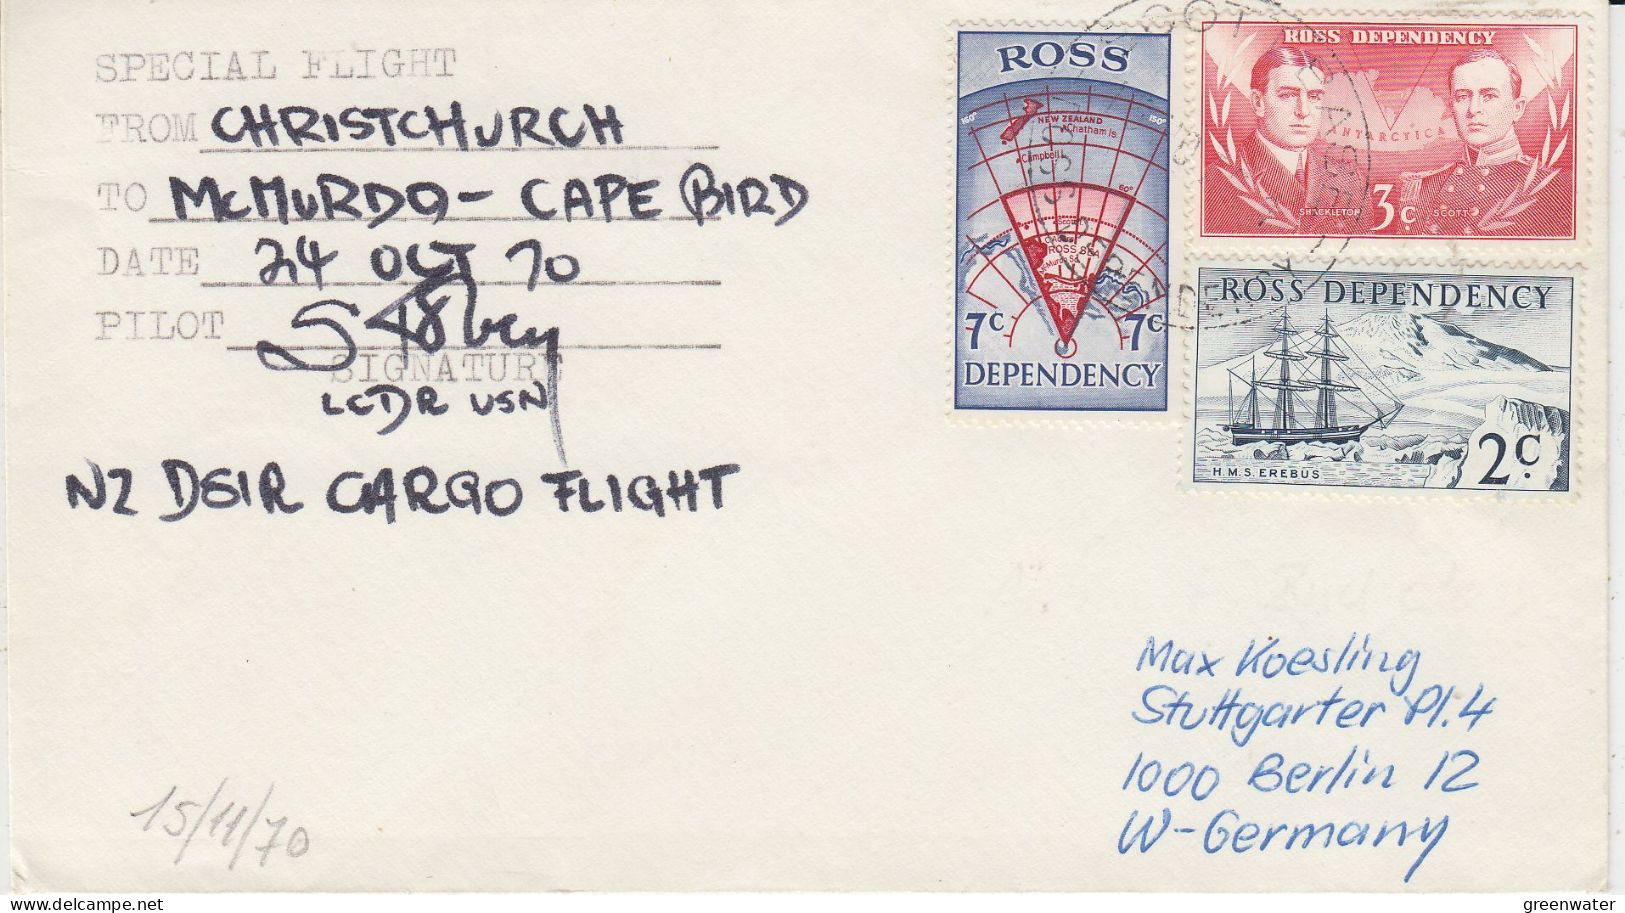 Ross Dependency Flight From Christchurch To McMurdo - Cape Bird 24 OCT 1970 Ca Scott Base (SO194) - Poolvluchten